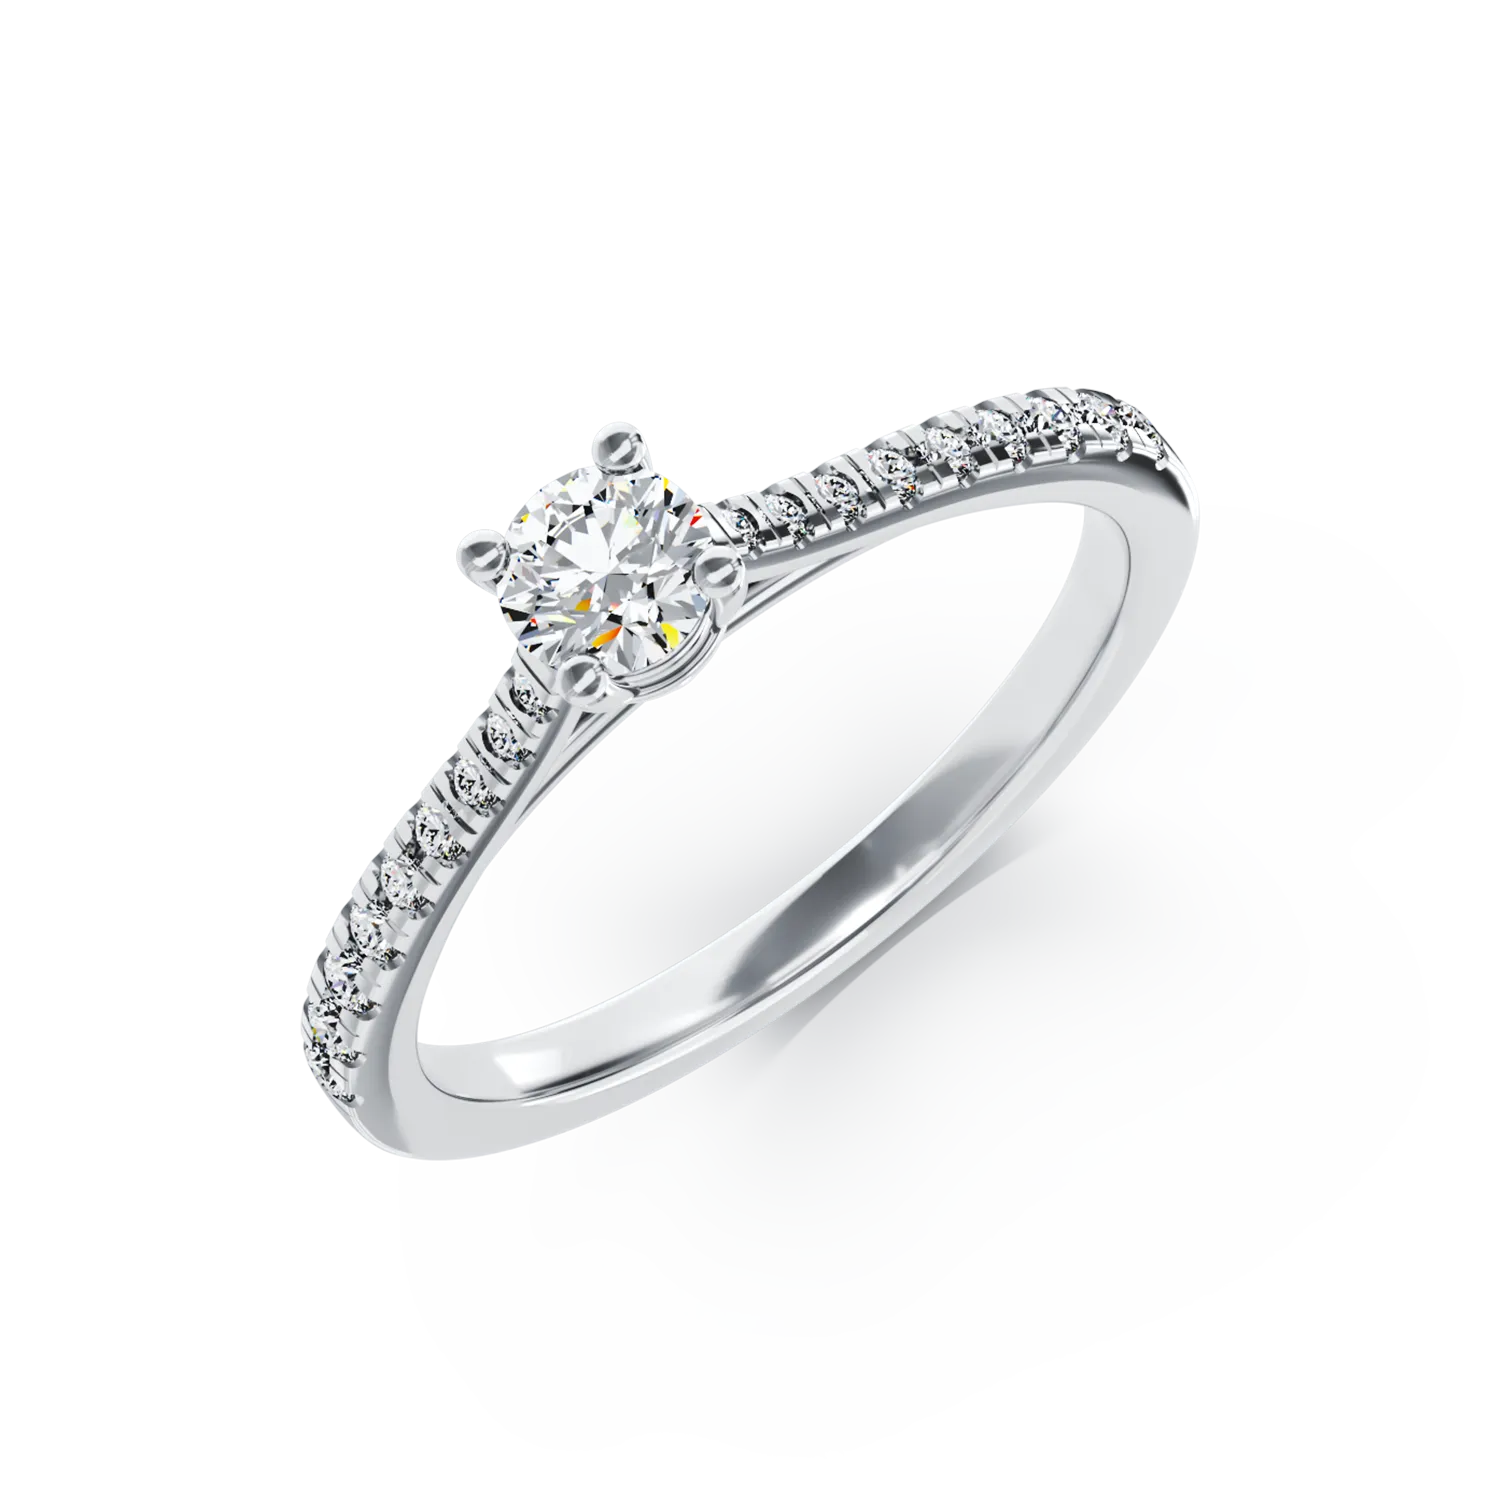 Eljegyzési gyűrű 18K-os fehér aranyból 0,16ct gyémánttal és 0,17ct gyémánttal. Gramm: 2,59